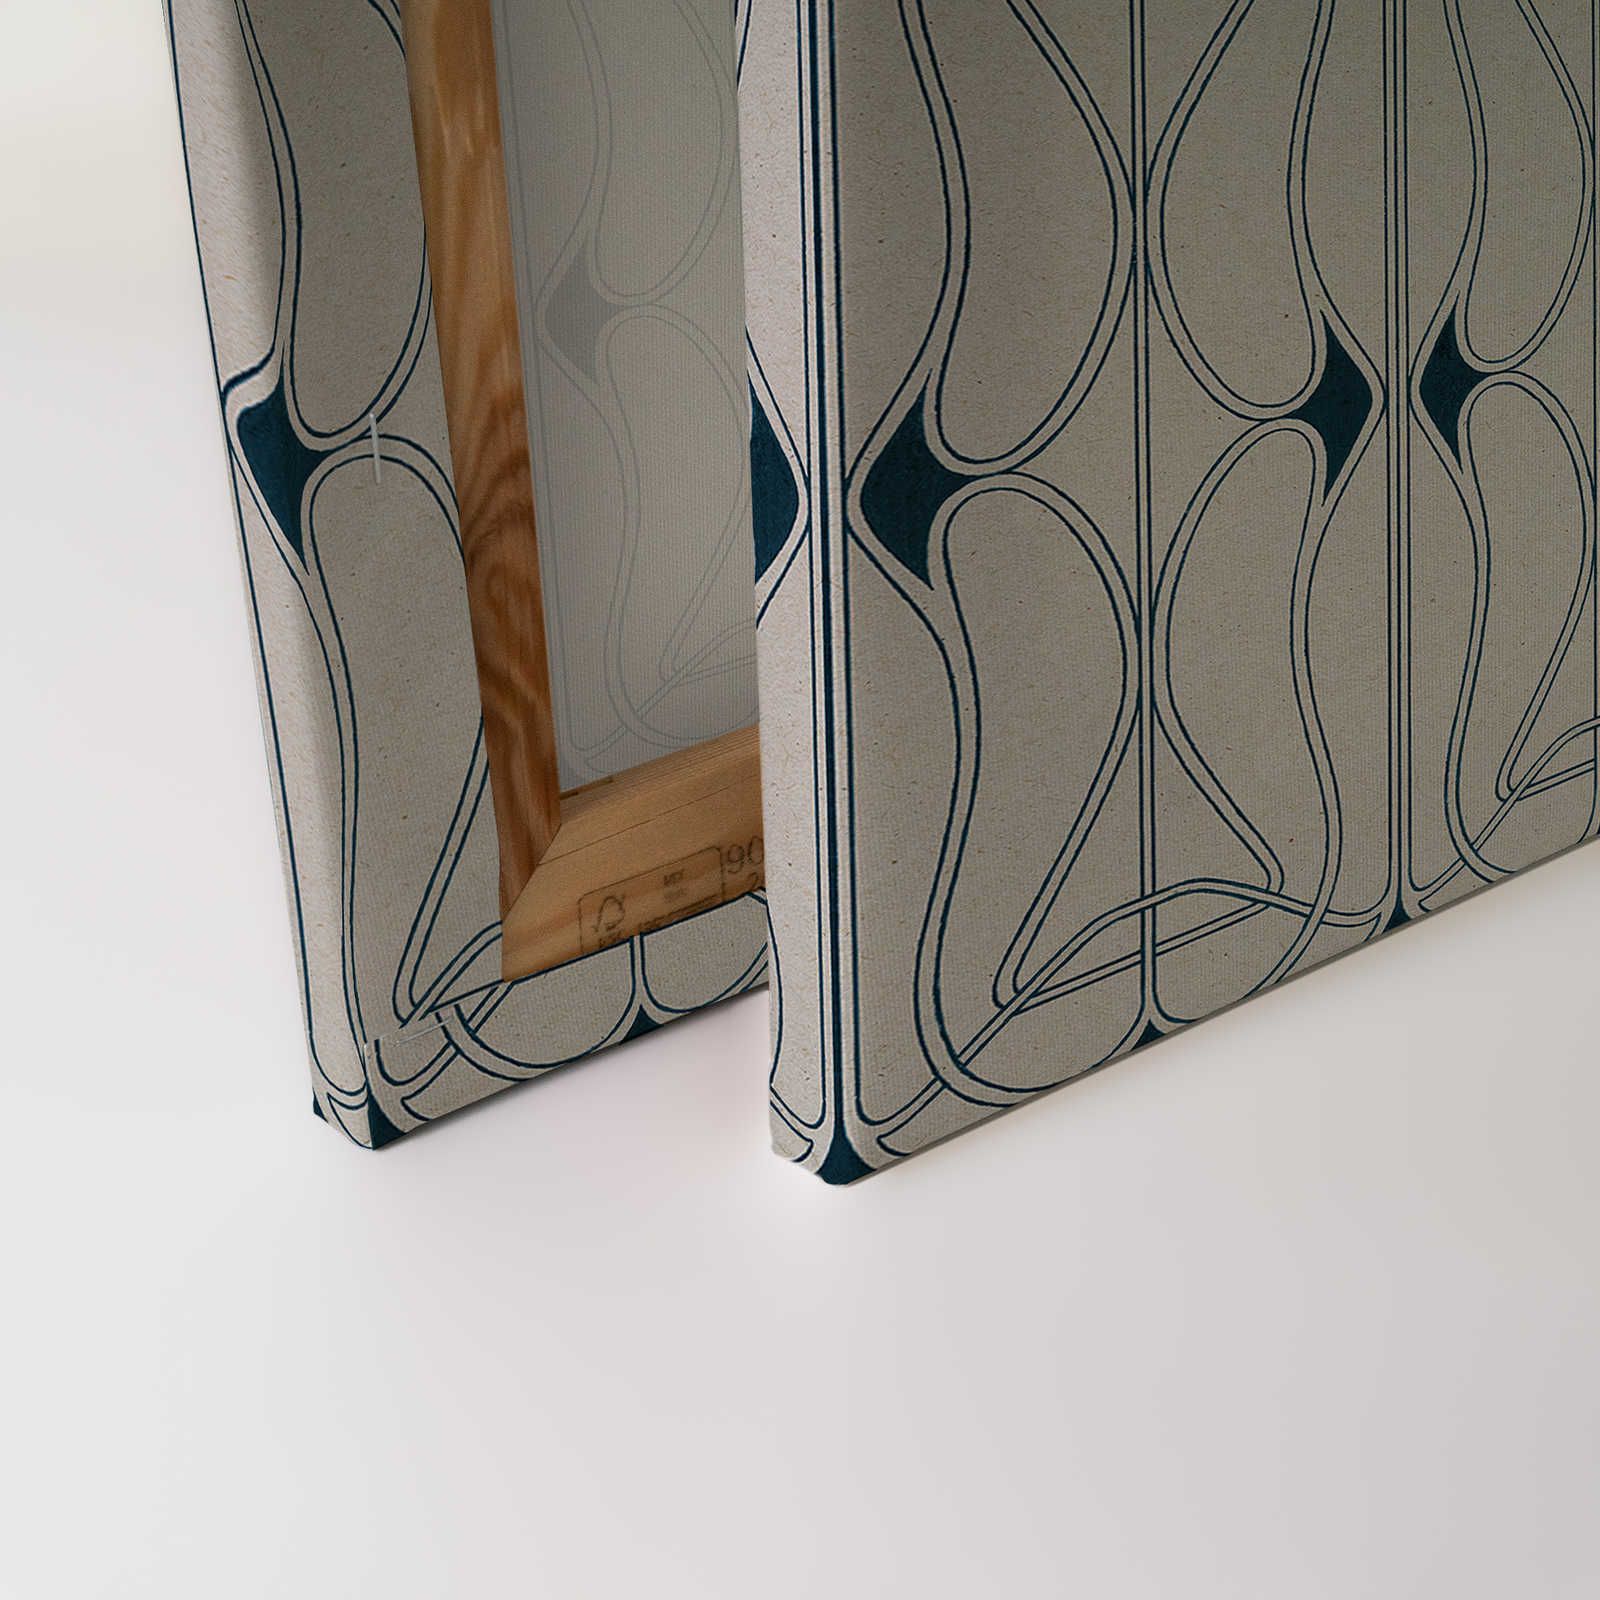             Astoria 1 - Toile Art Nouveau Motif Gris & Bleu Noir - 0,90 m x 0,60 m
        